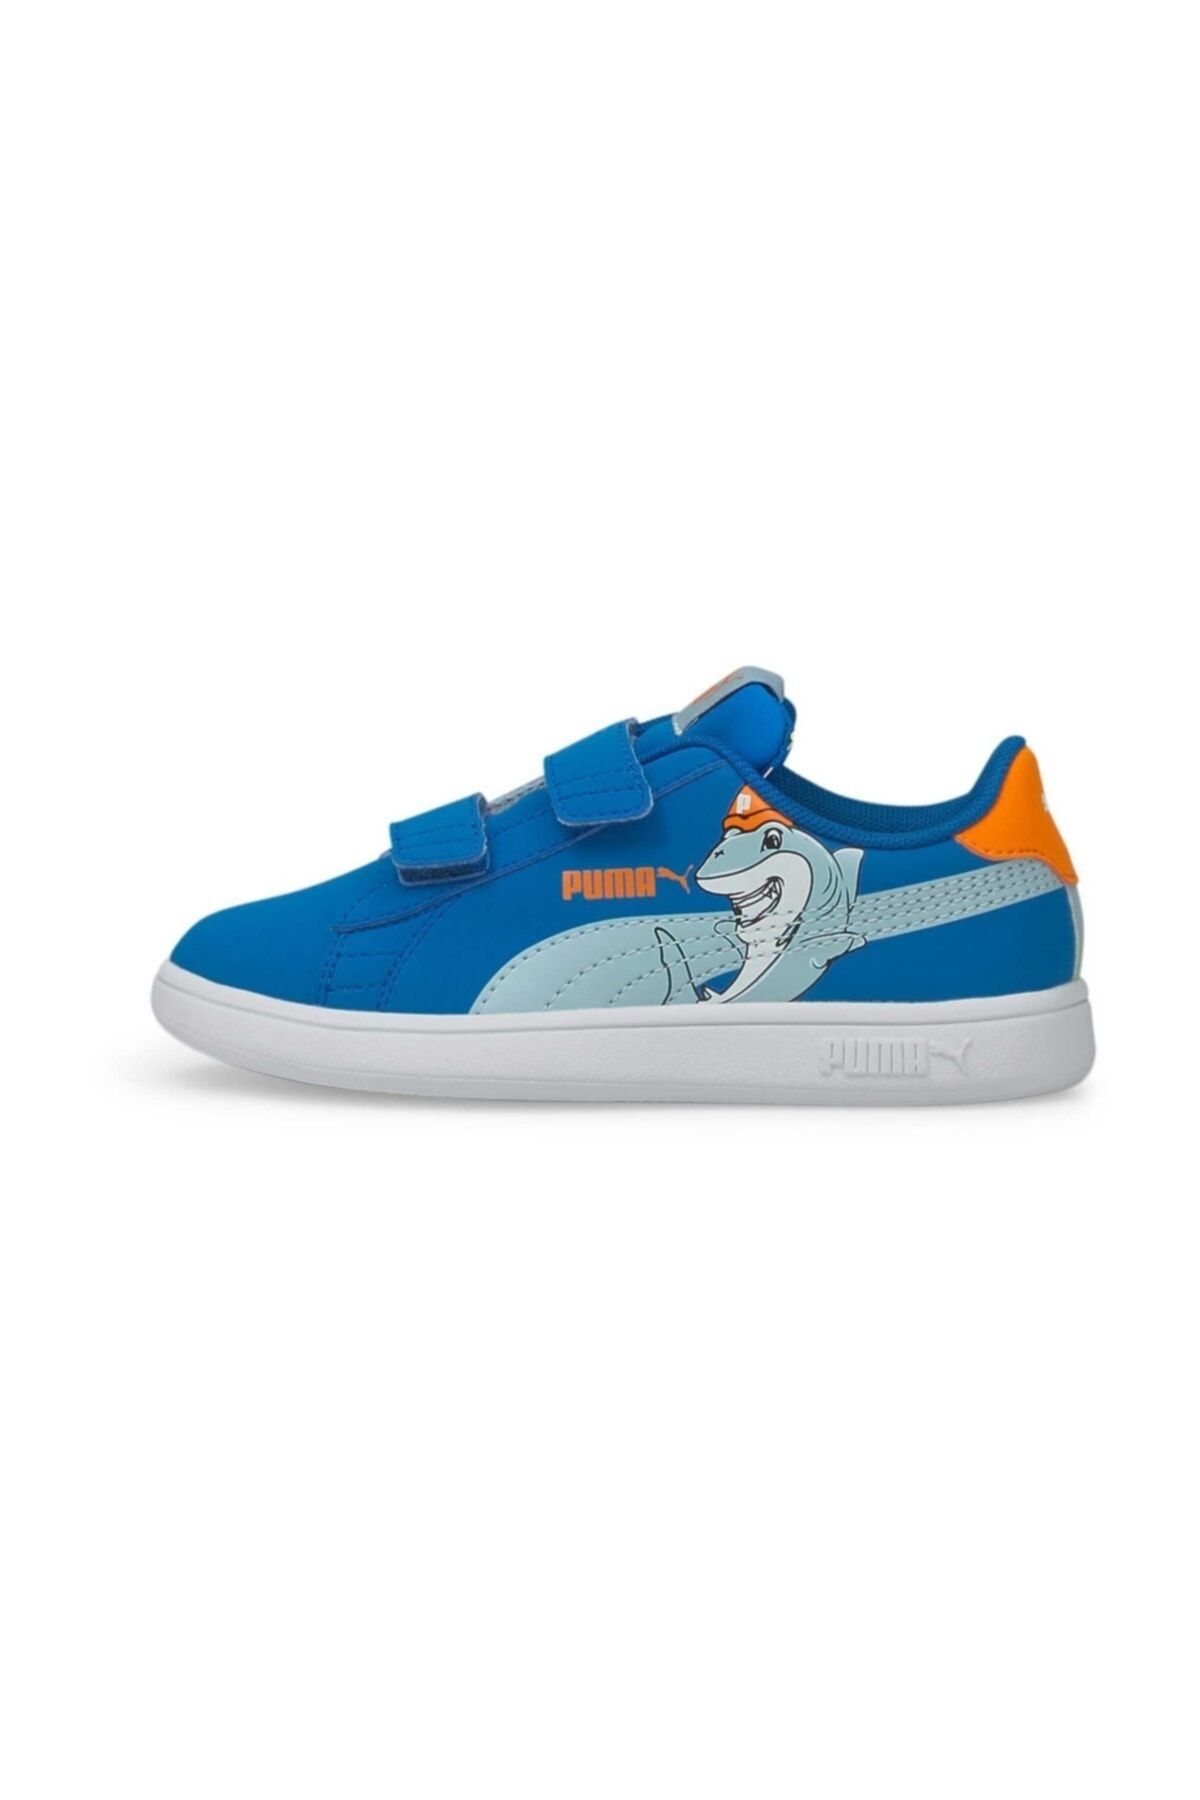 Puma Smash V2 Lil Çocuk Günlük Ayakkabı 38090401 Mavi